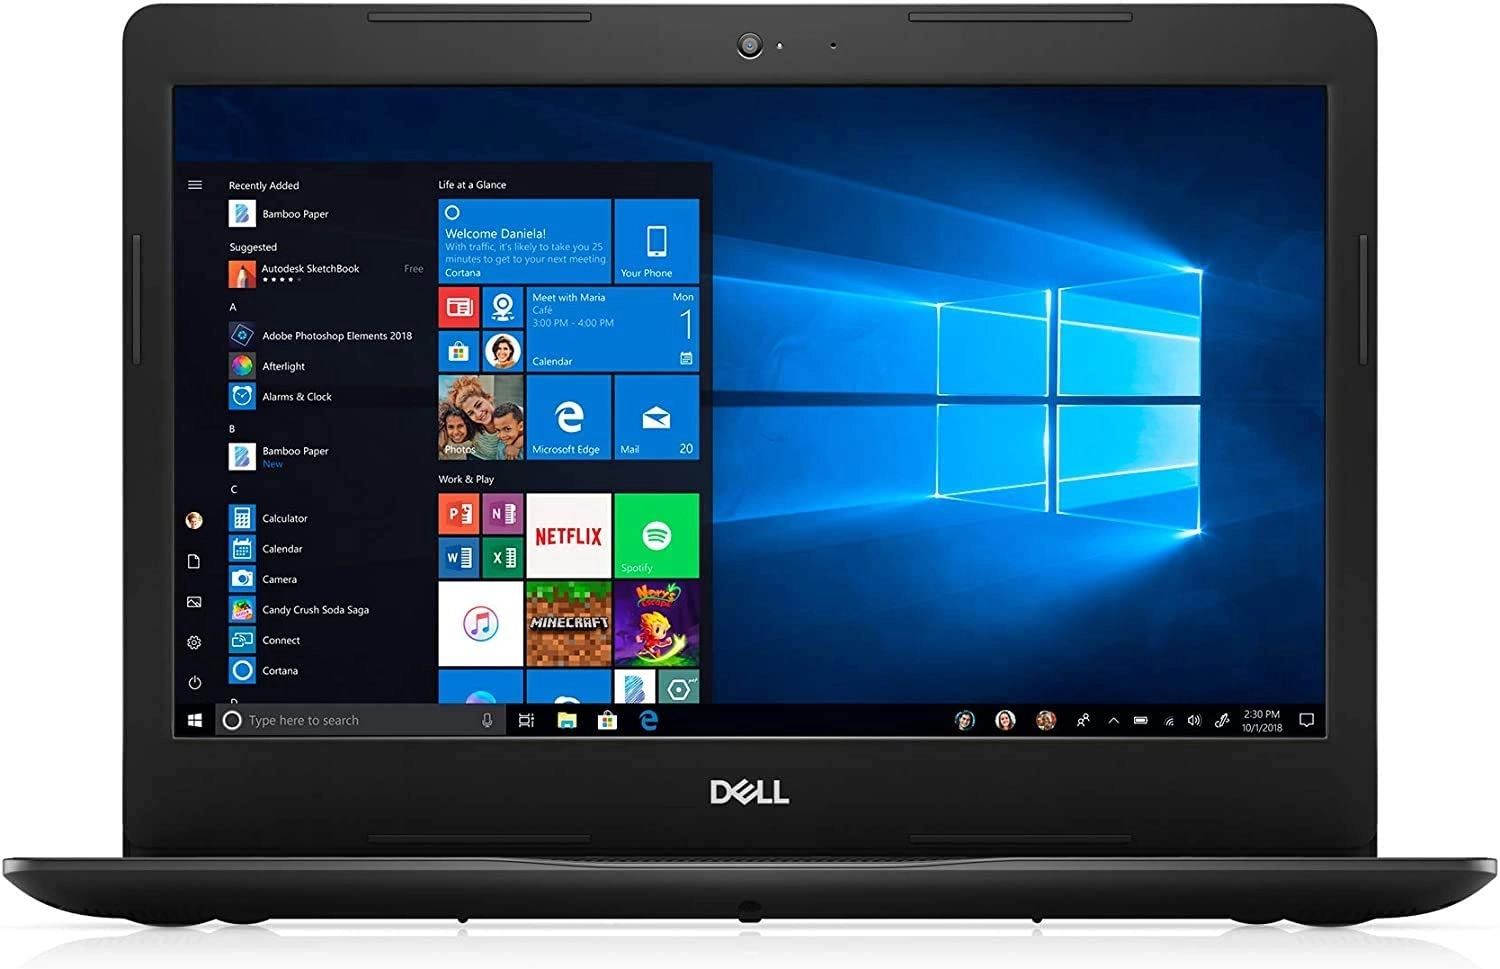 Dell D15 laptop image